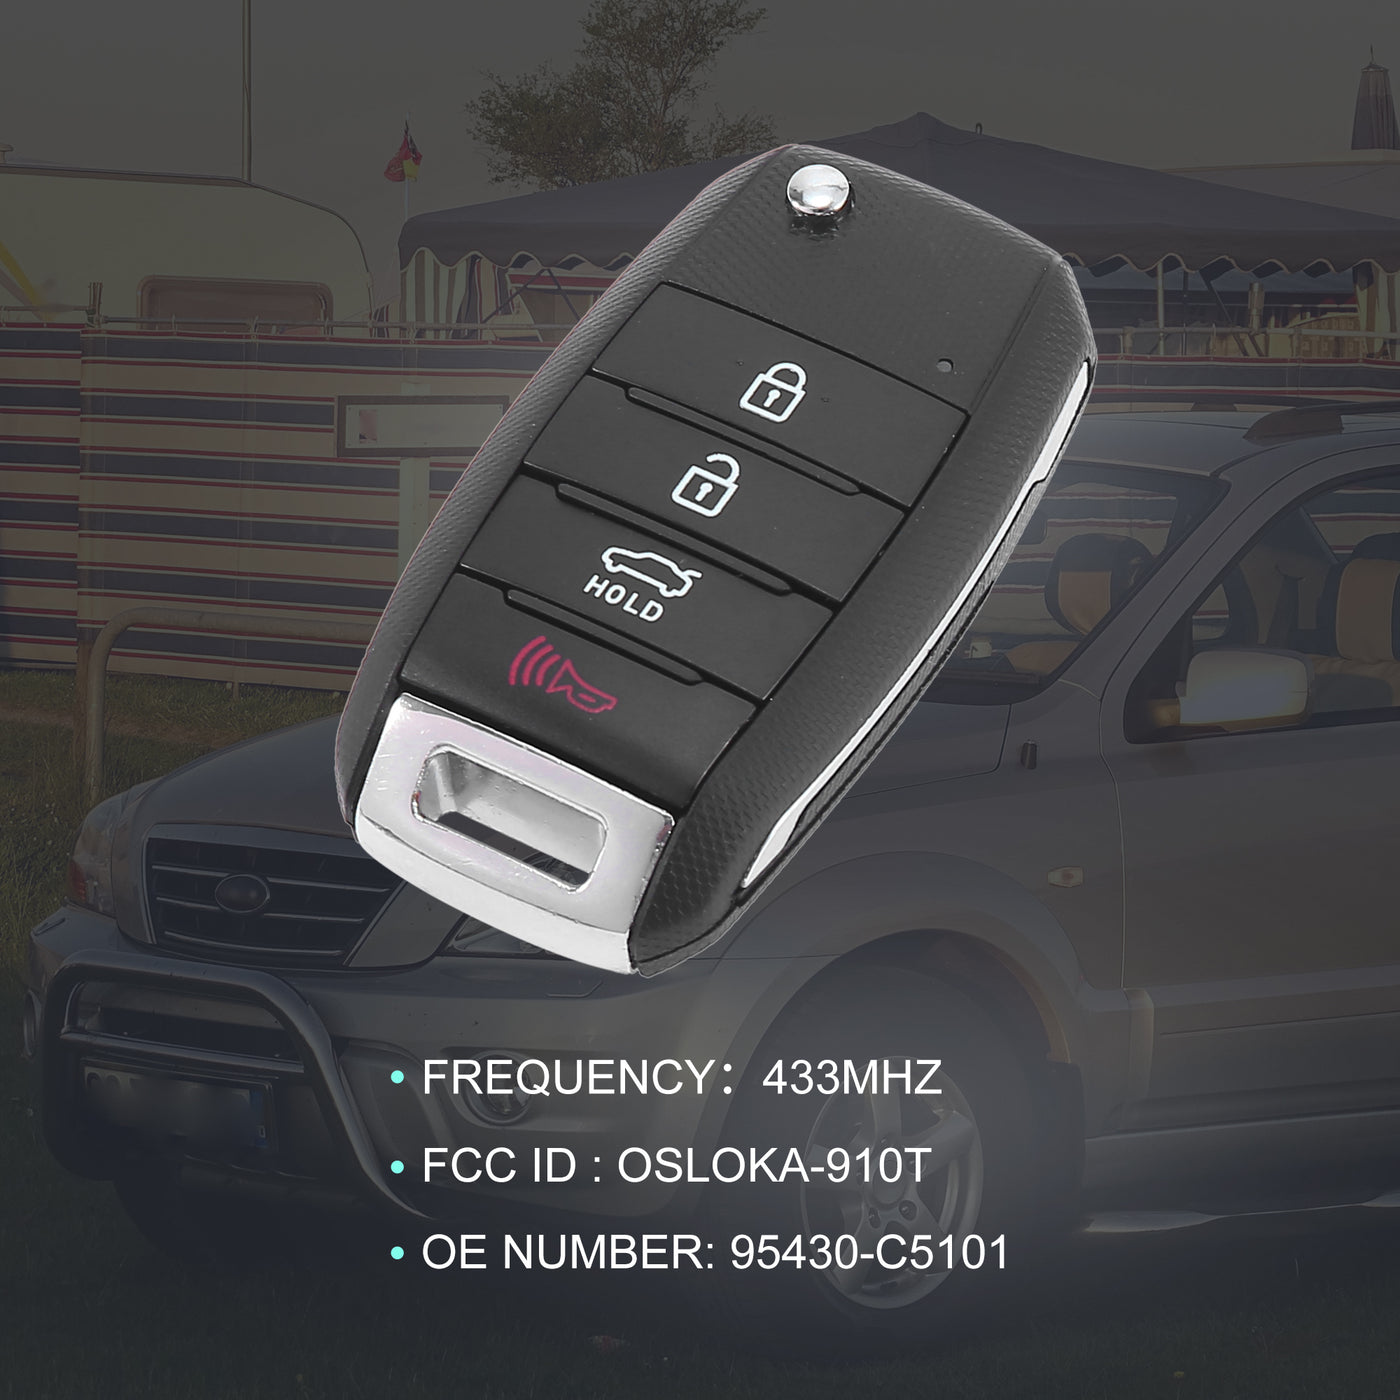 X AUTOHAUX 433MHz OSLOKA-910T Replacement Keyless Entry Remote Key Fob for Kia Sorento 2015 2016 2017 2018 2019 2020 95430-C5101